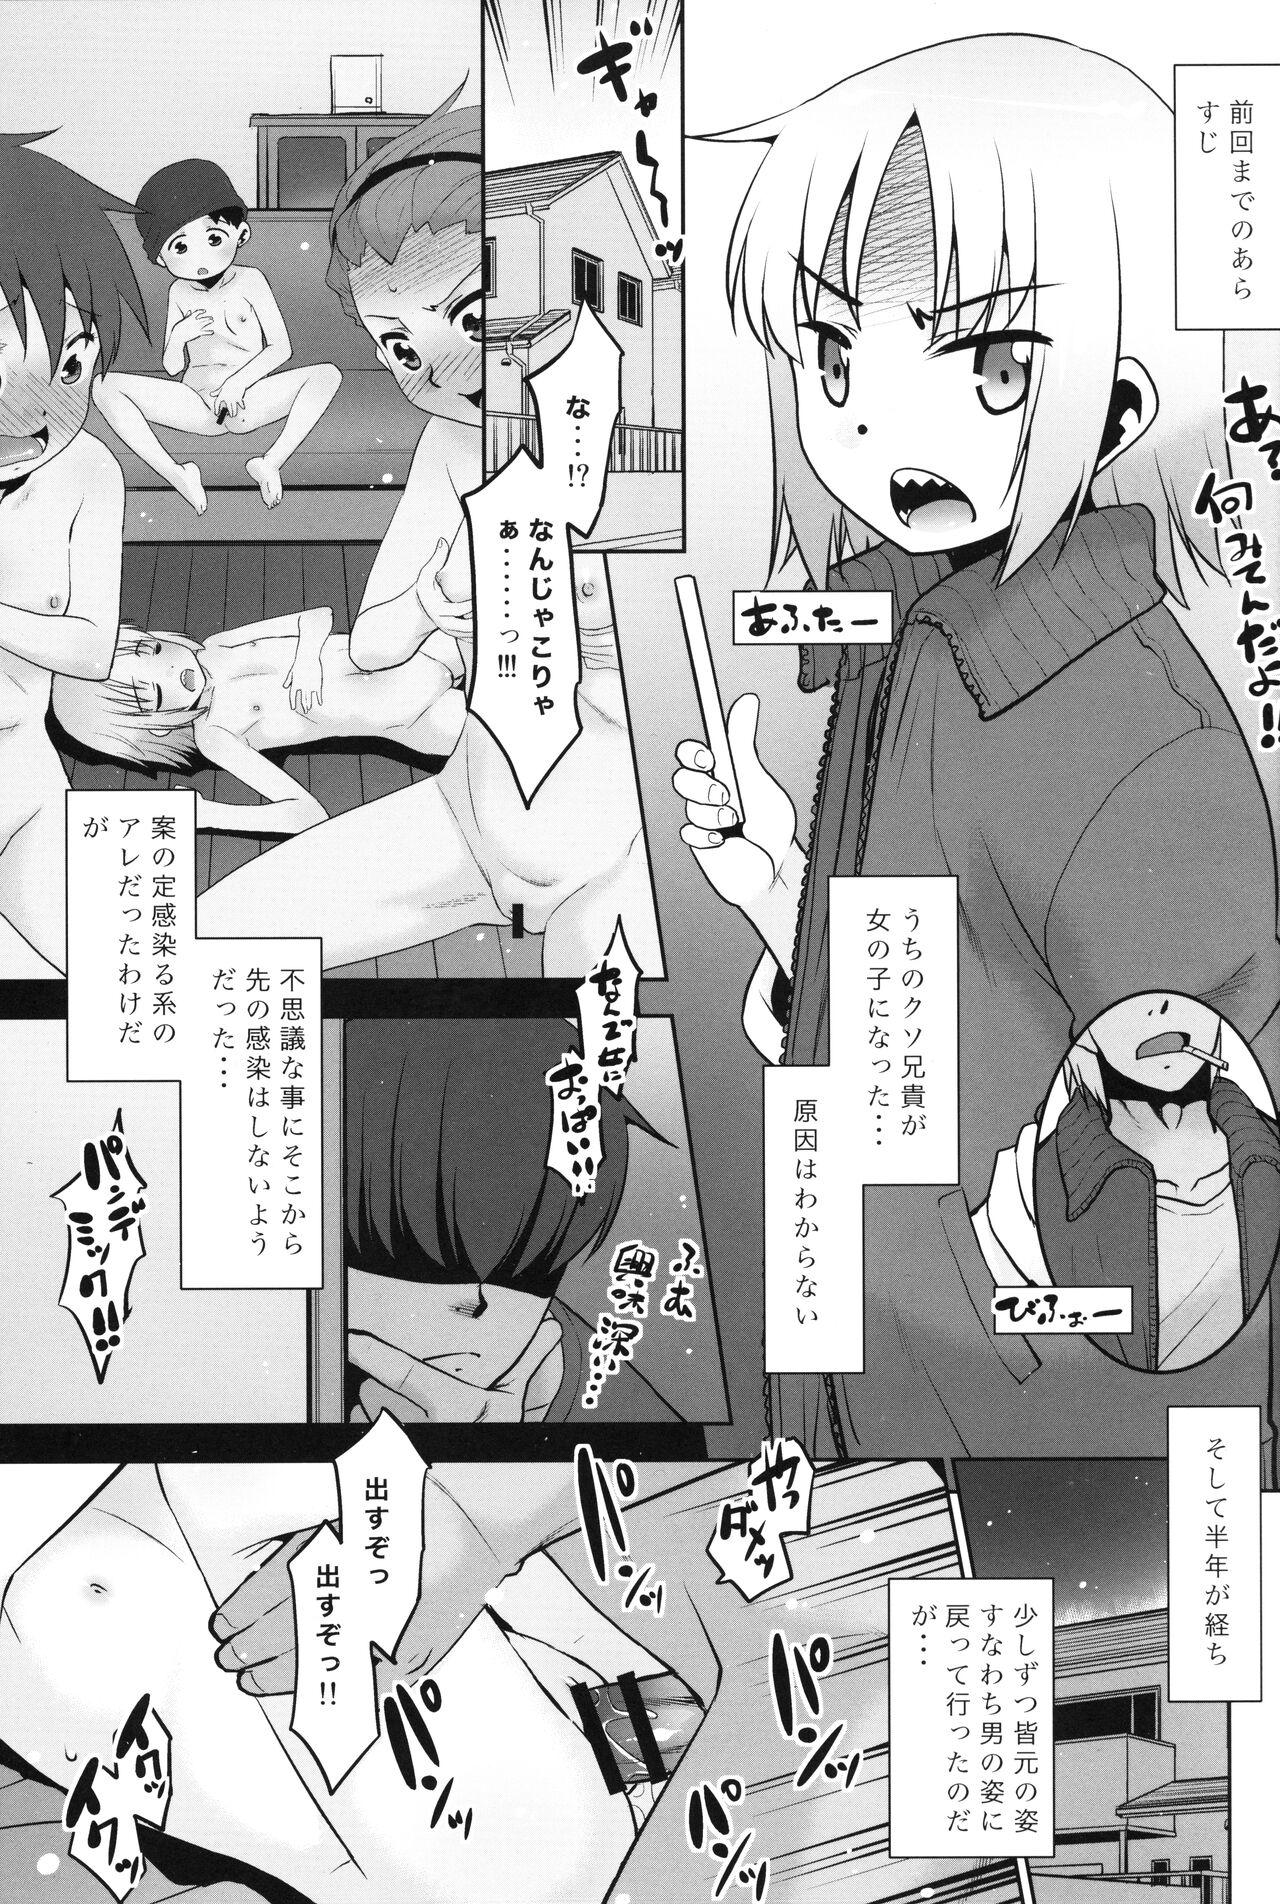 Butt Uchi no Aniki ga Onna no ko ni natta kara Minna de Mawasou ze! 2 - Original Gaypawn - Page 2